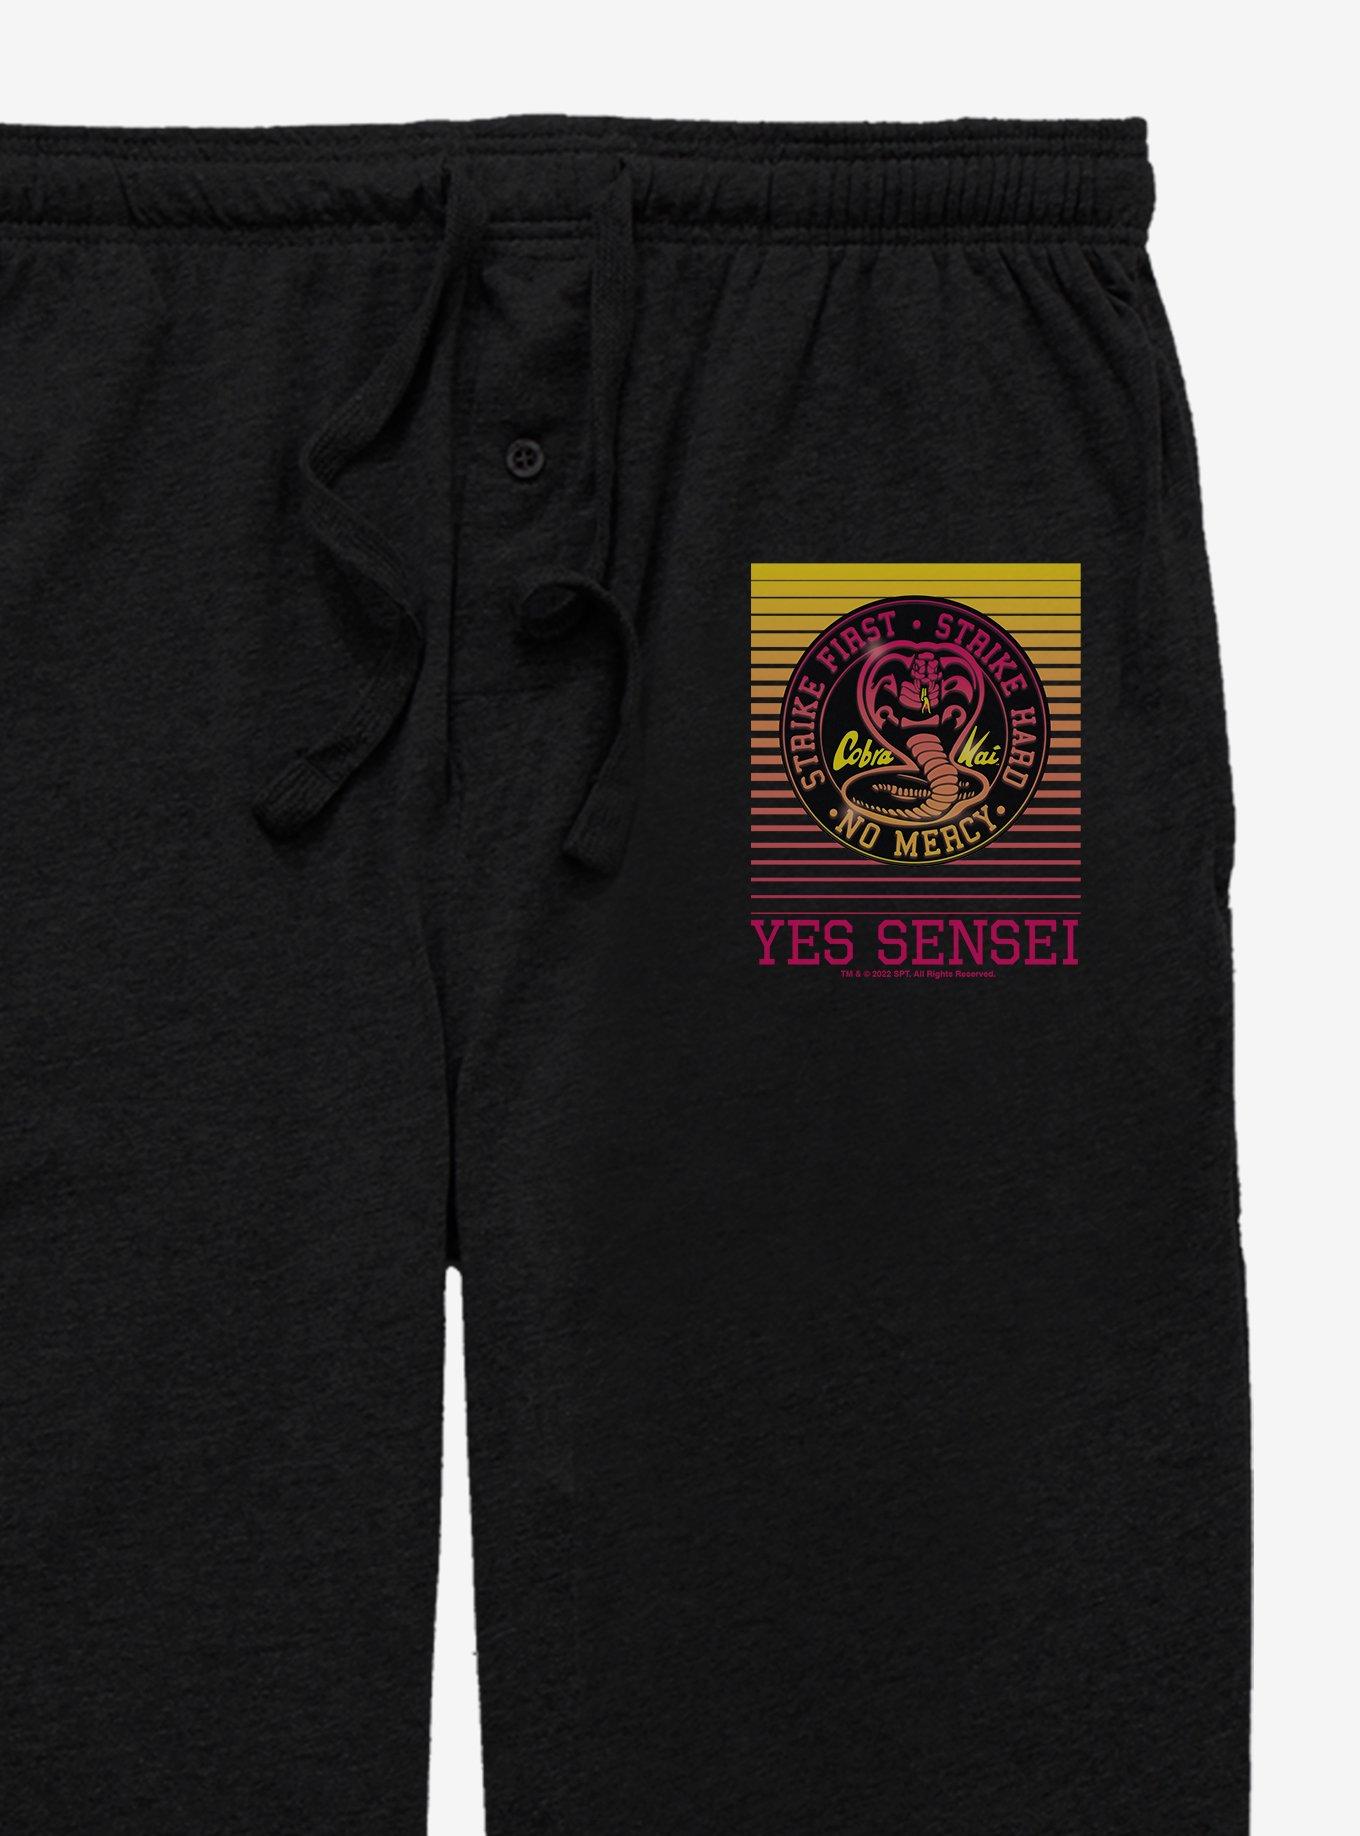 Cobra Kai Sunset Sensei Pajama Pants, BLACK, alternate